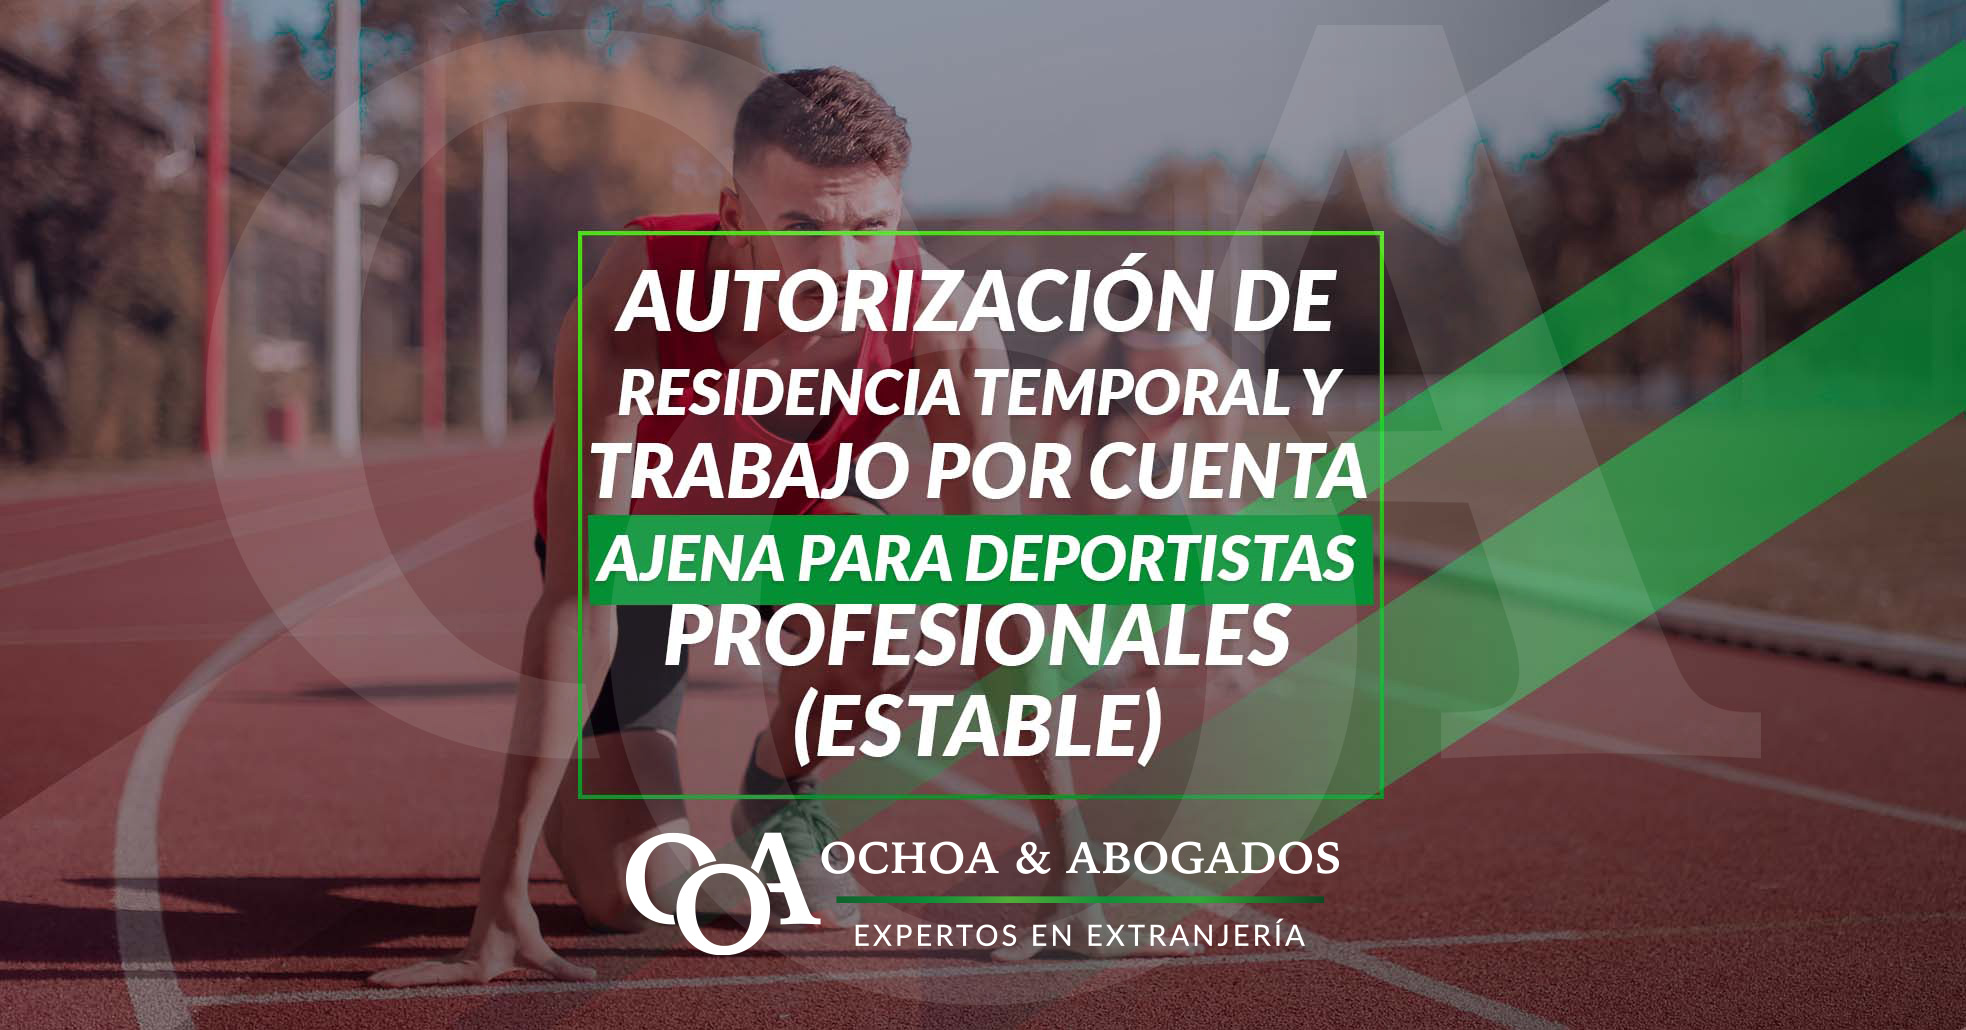 99 Autorización De Residencia Temporal Y Trabajo Por Cuenta Ajena Para Deportistas Profesionales (ESTABLE)